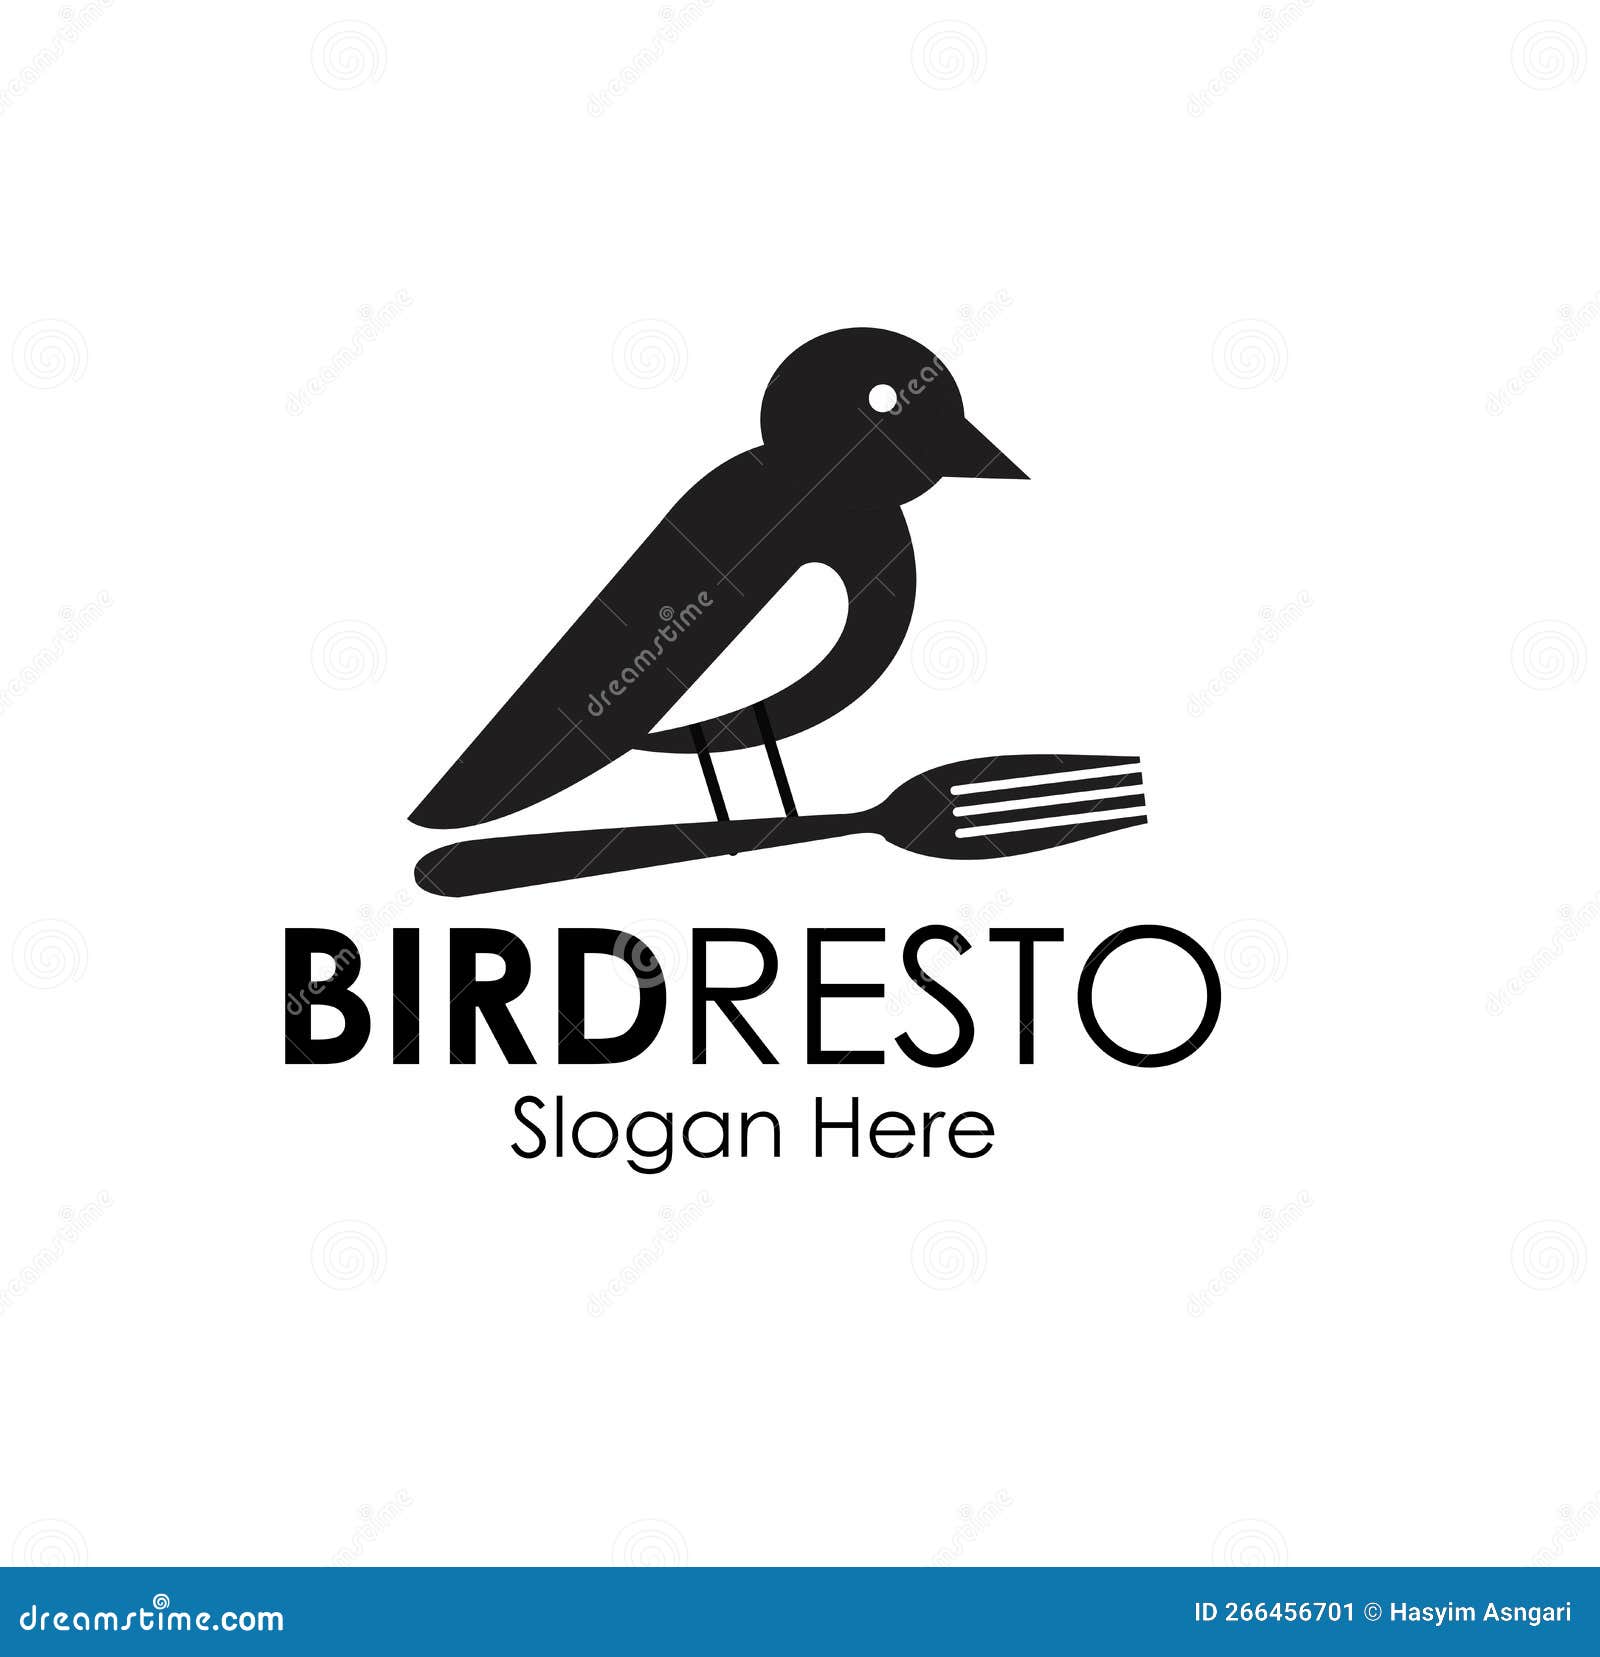 bird resto logo  concept